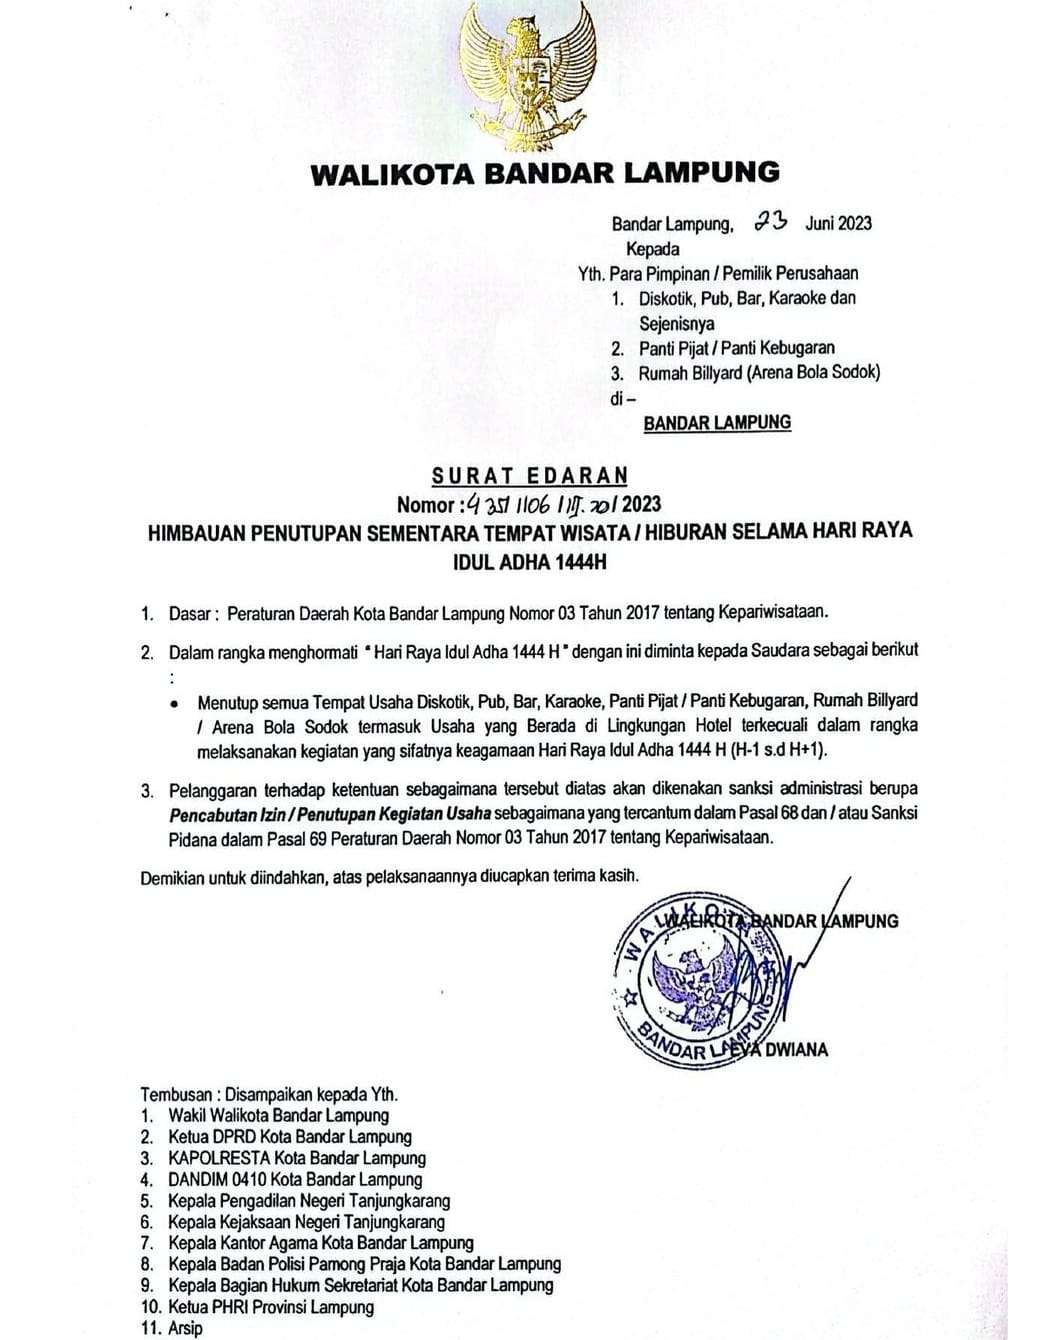 Walikota Bandar Lampung Keluarkan SE Penutupan Sementara Tempat Hiburan H-1 hingga H+3 Idul Adha